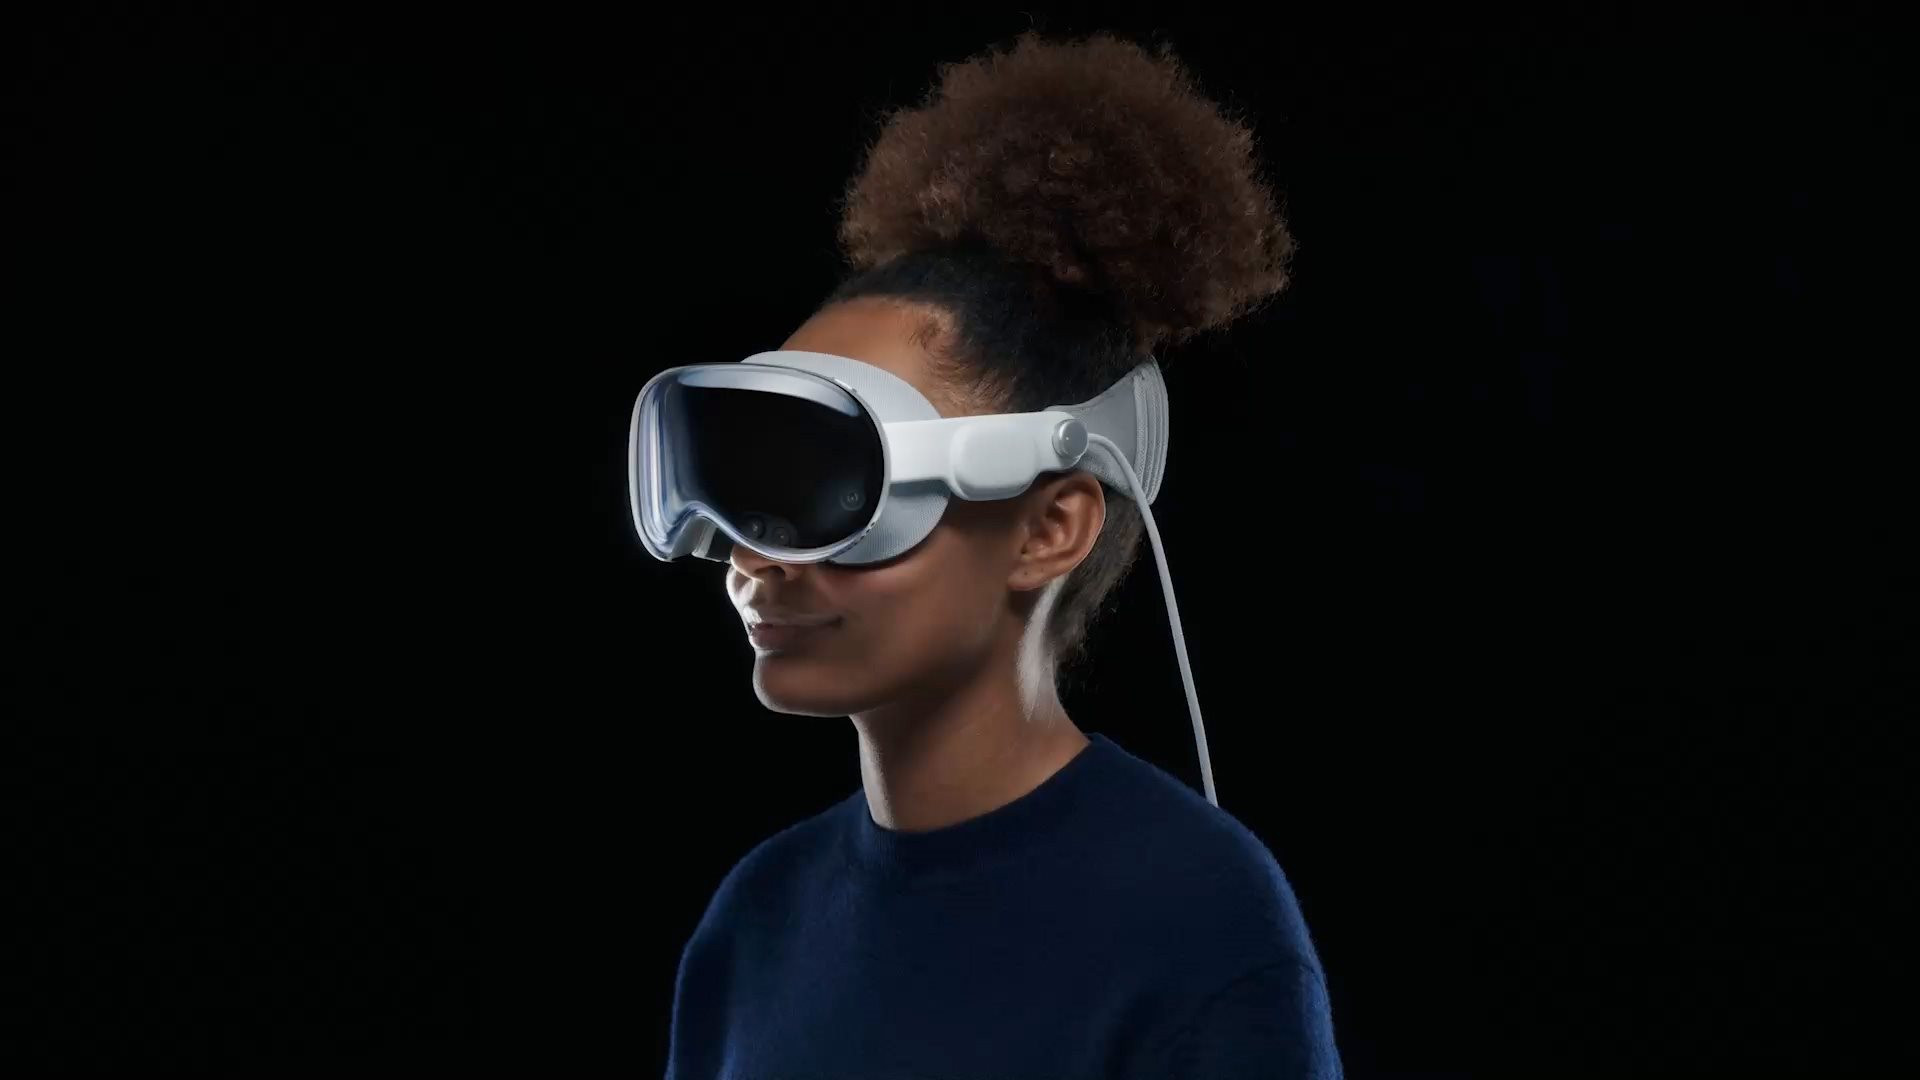 Apple tham gia cuộc chơi kính AR với Vision Pro với giá $3.99.